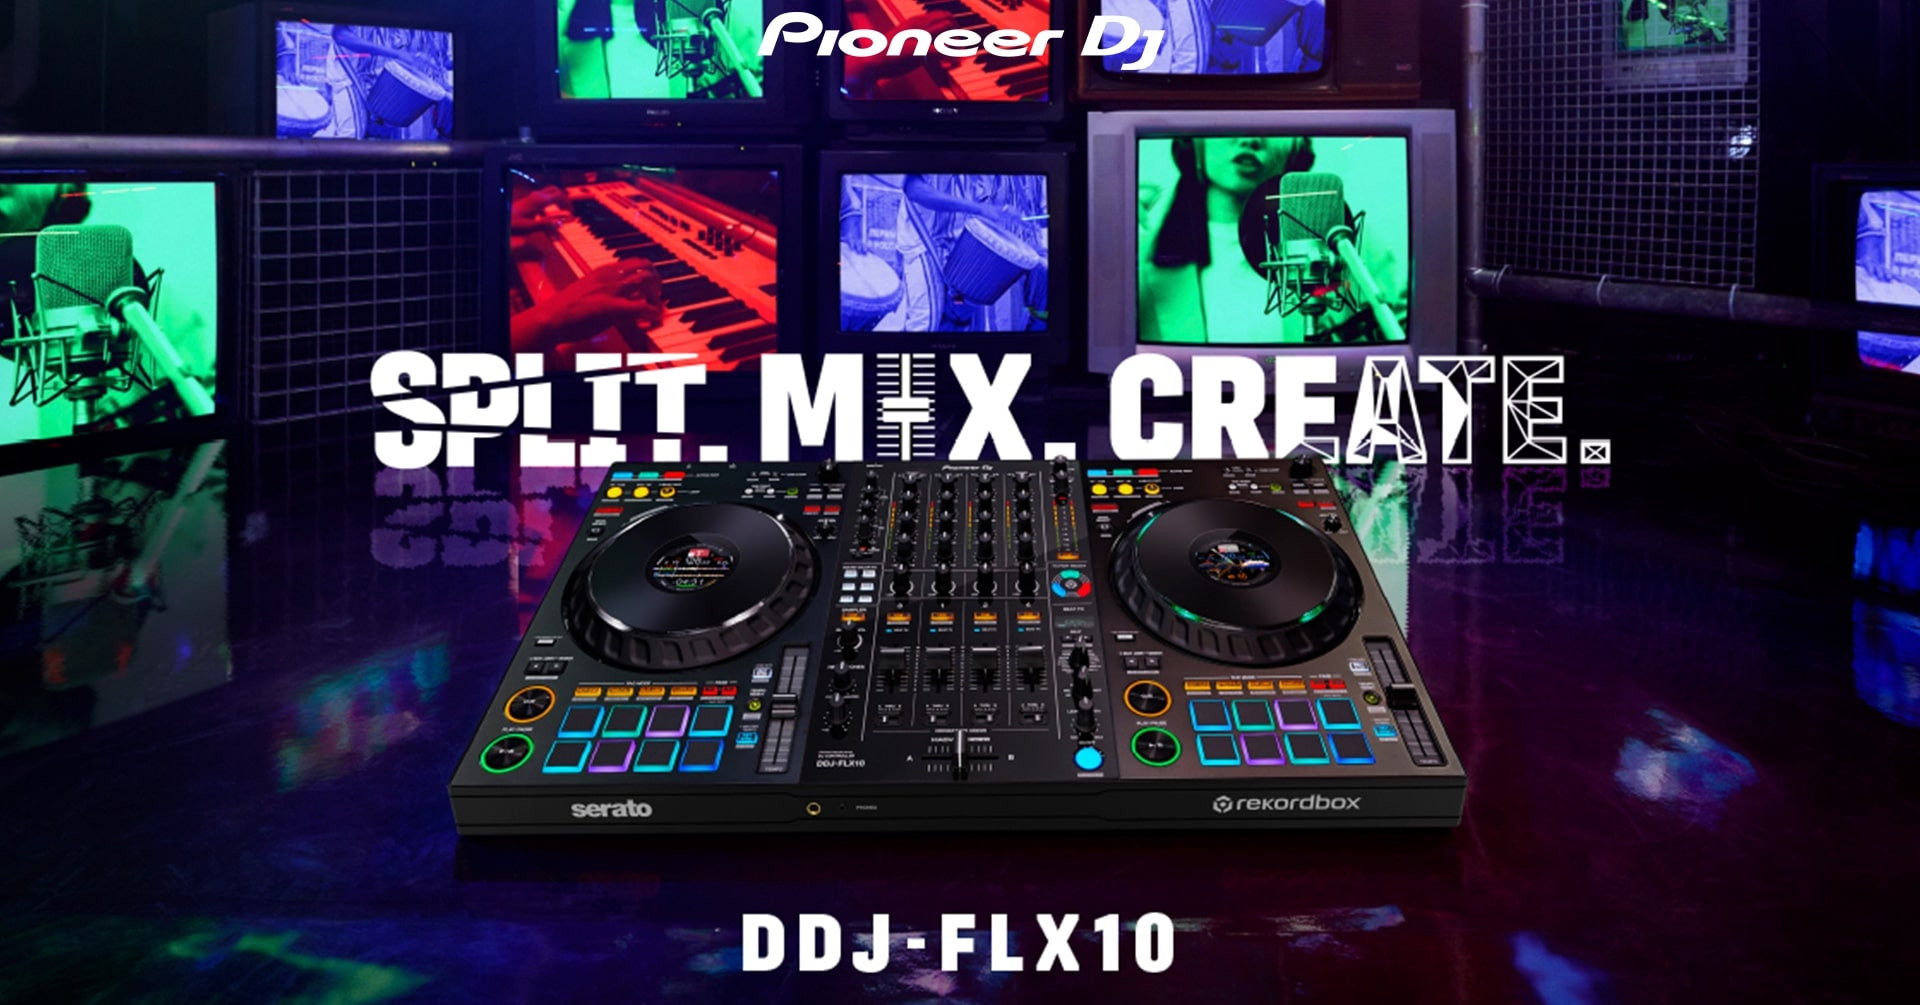 Pioneer DJ prezentuje nowy 4-kanałowy kontroler - DDJ-FLX10